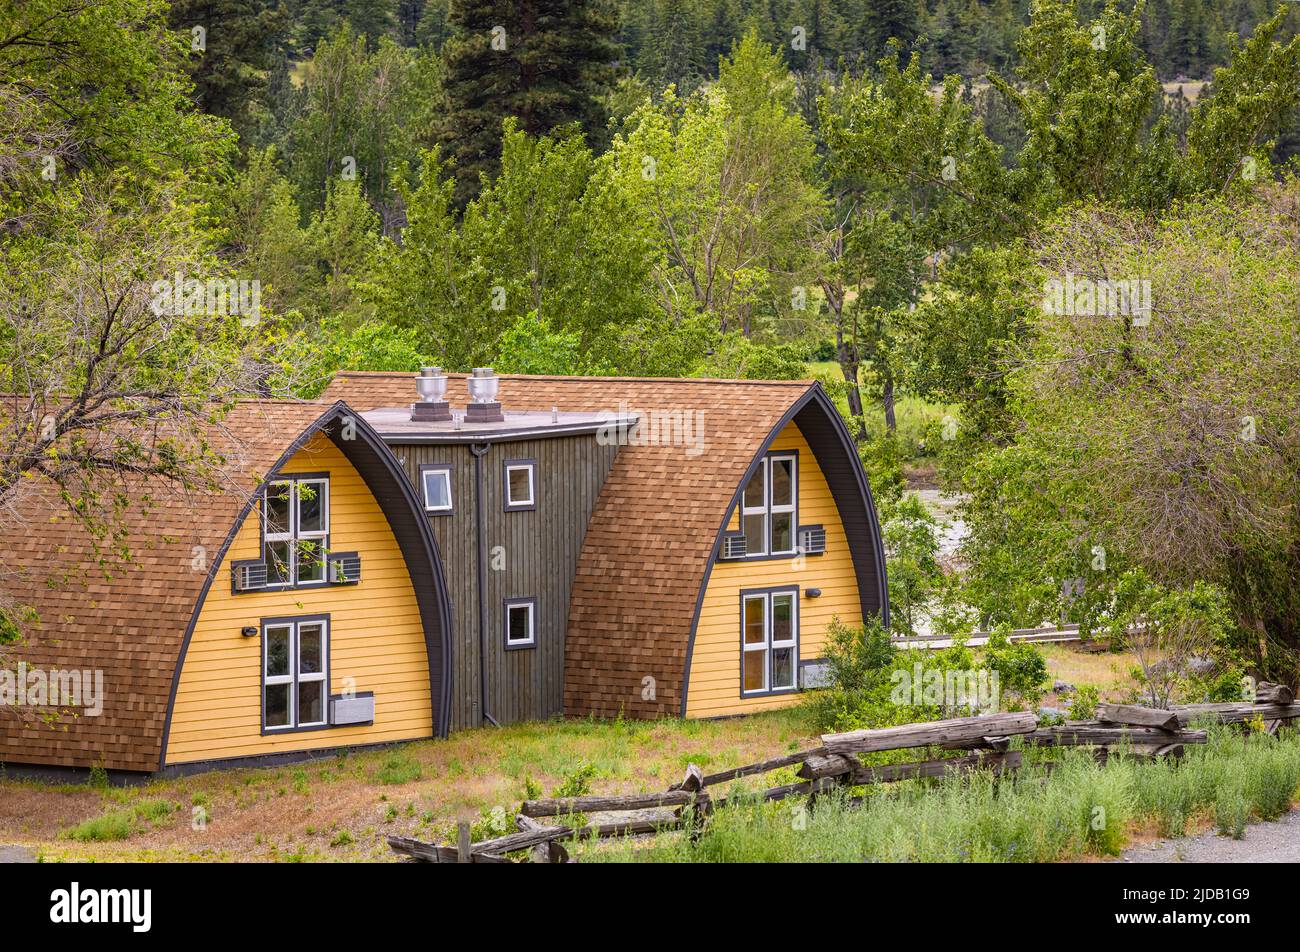 Maisons de chalet dans le parc Colombie-Britannique, Canada. Petites maisons en bois dans les montagnes. Photo de voyage, personne, mise au point sélective Banque D'Images